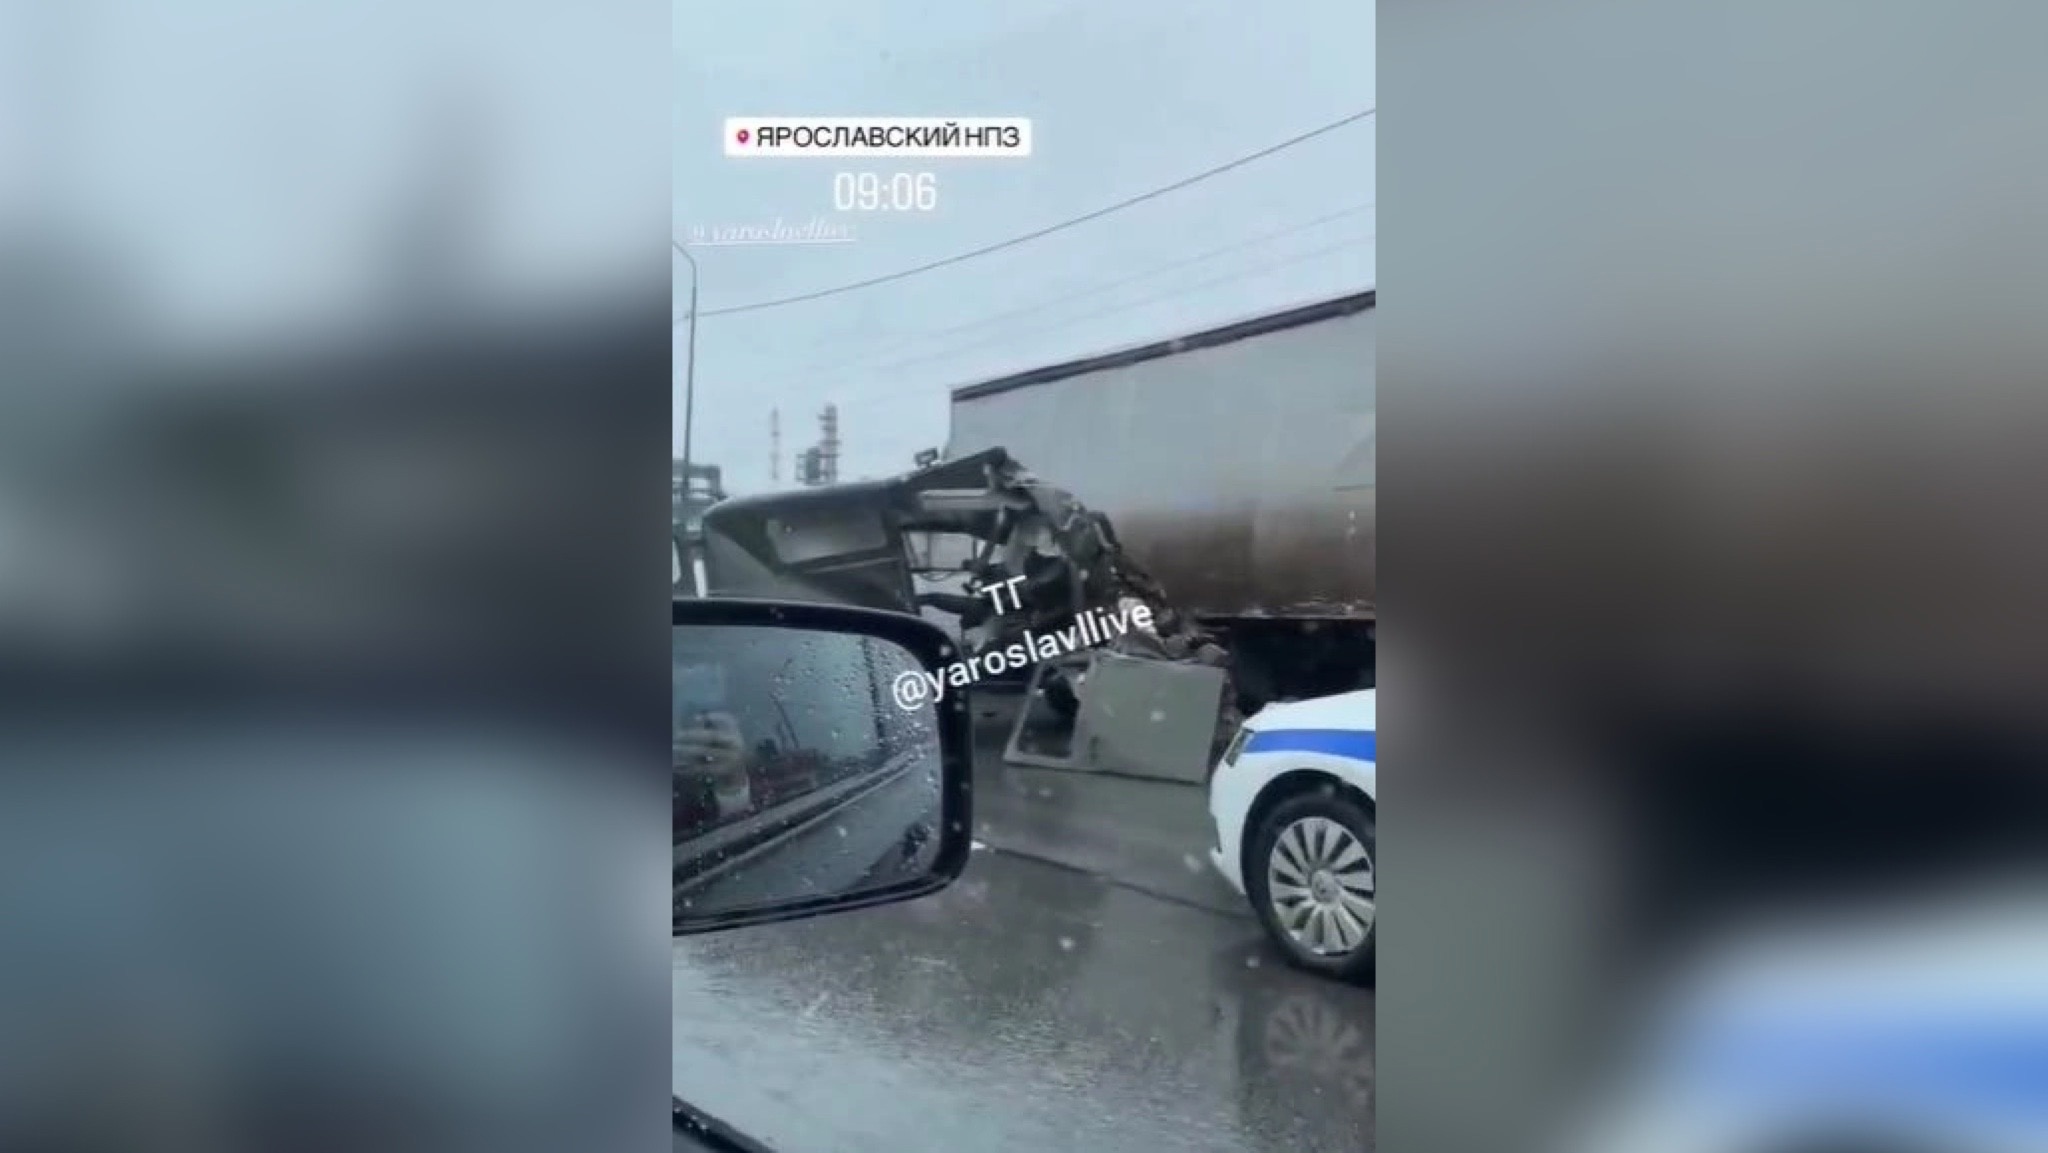 Очевидцы сообщают о серьезной аварии у НПЗ в Ярославском районе